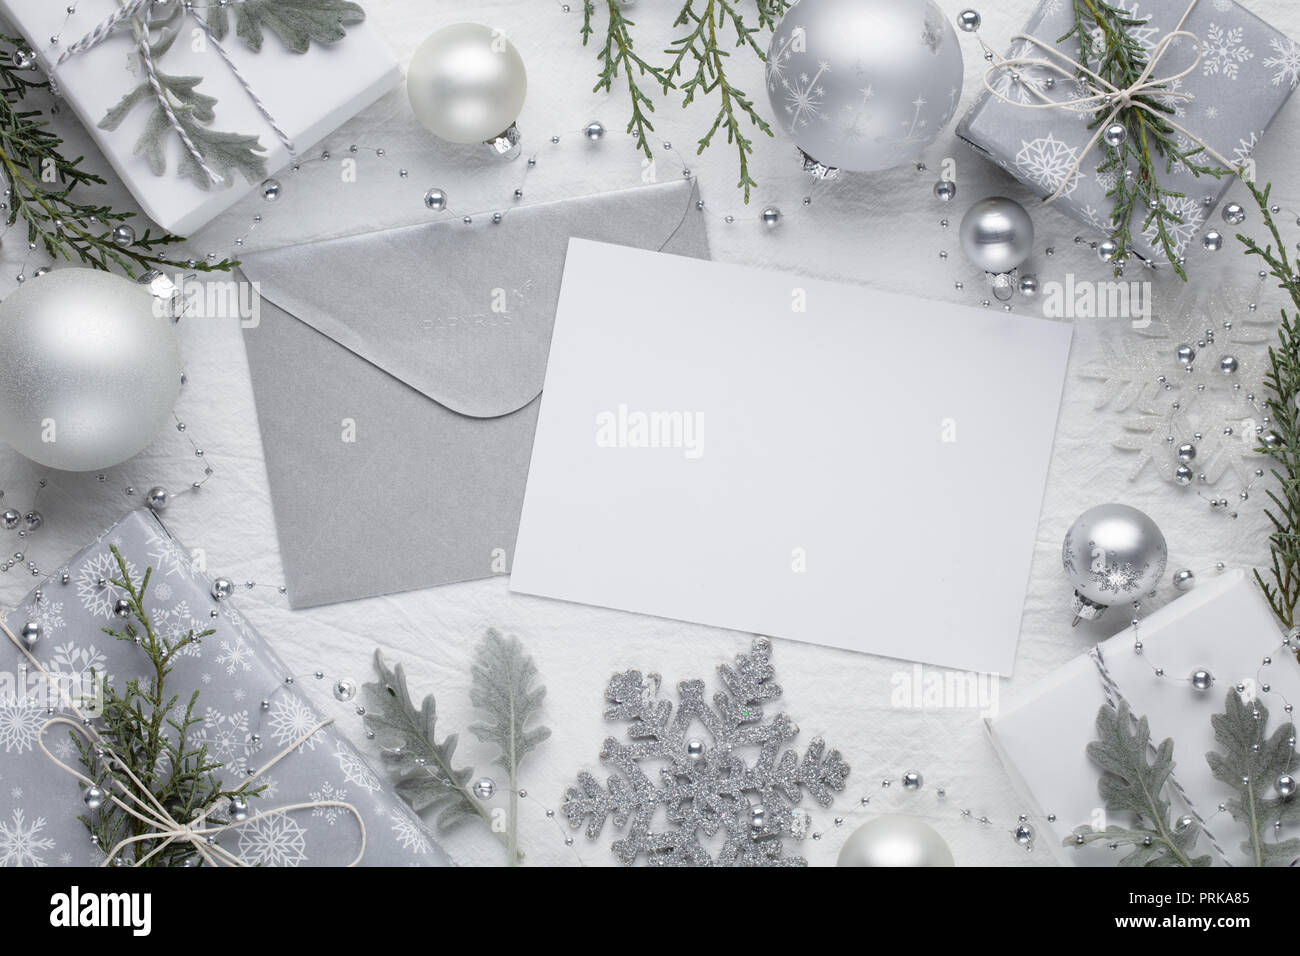 Christmas frame mockup,Christmas balls,gift boxes and letter Stock Photo